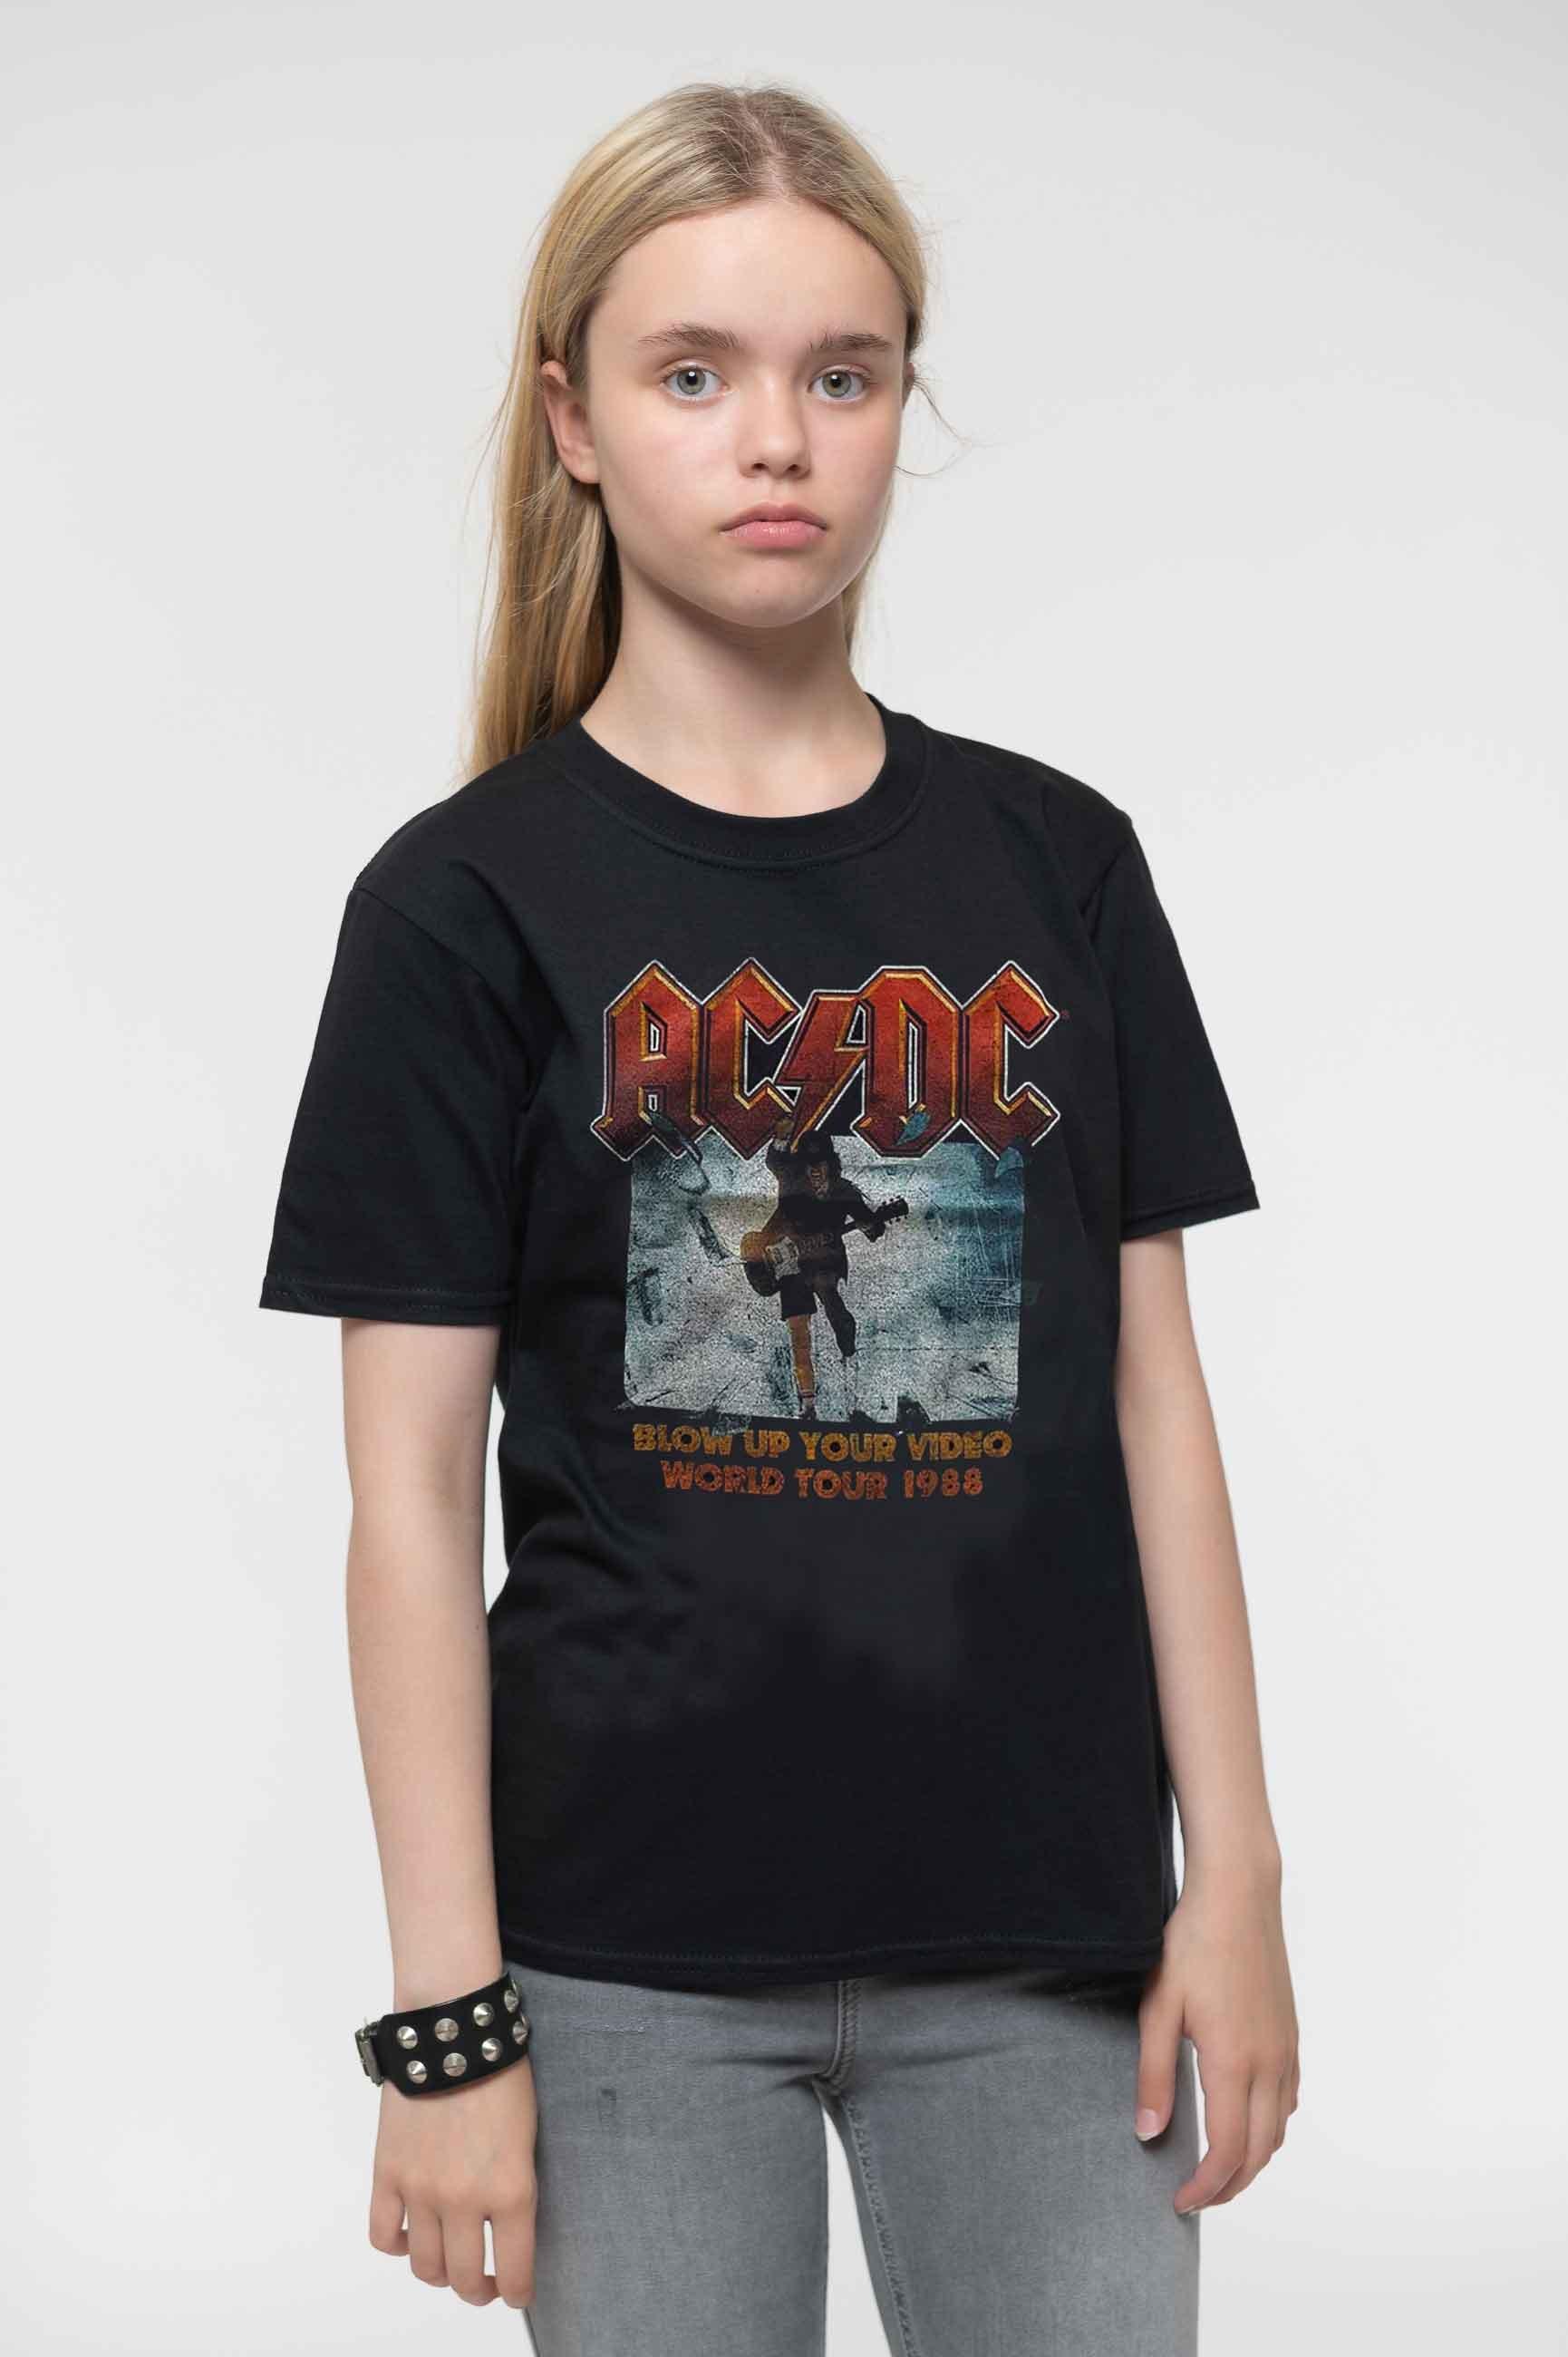 Взорви свою футболку с видео AC/DC, черный компакт диски epic ac dc blow up your video cd digipak